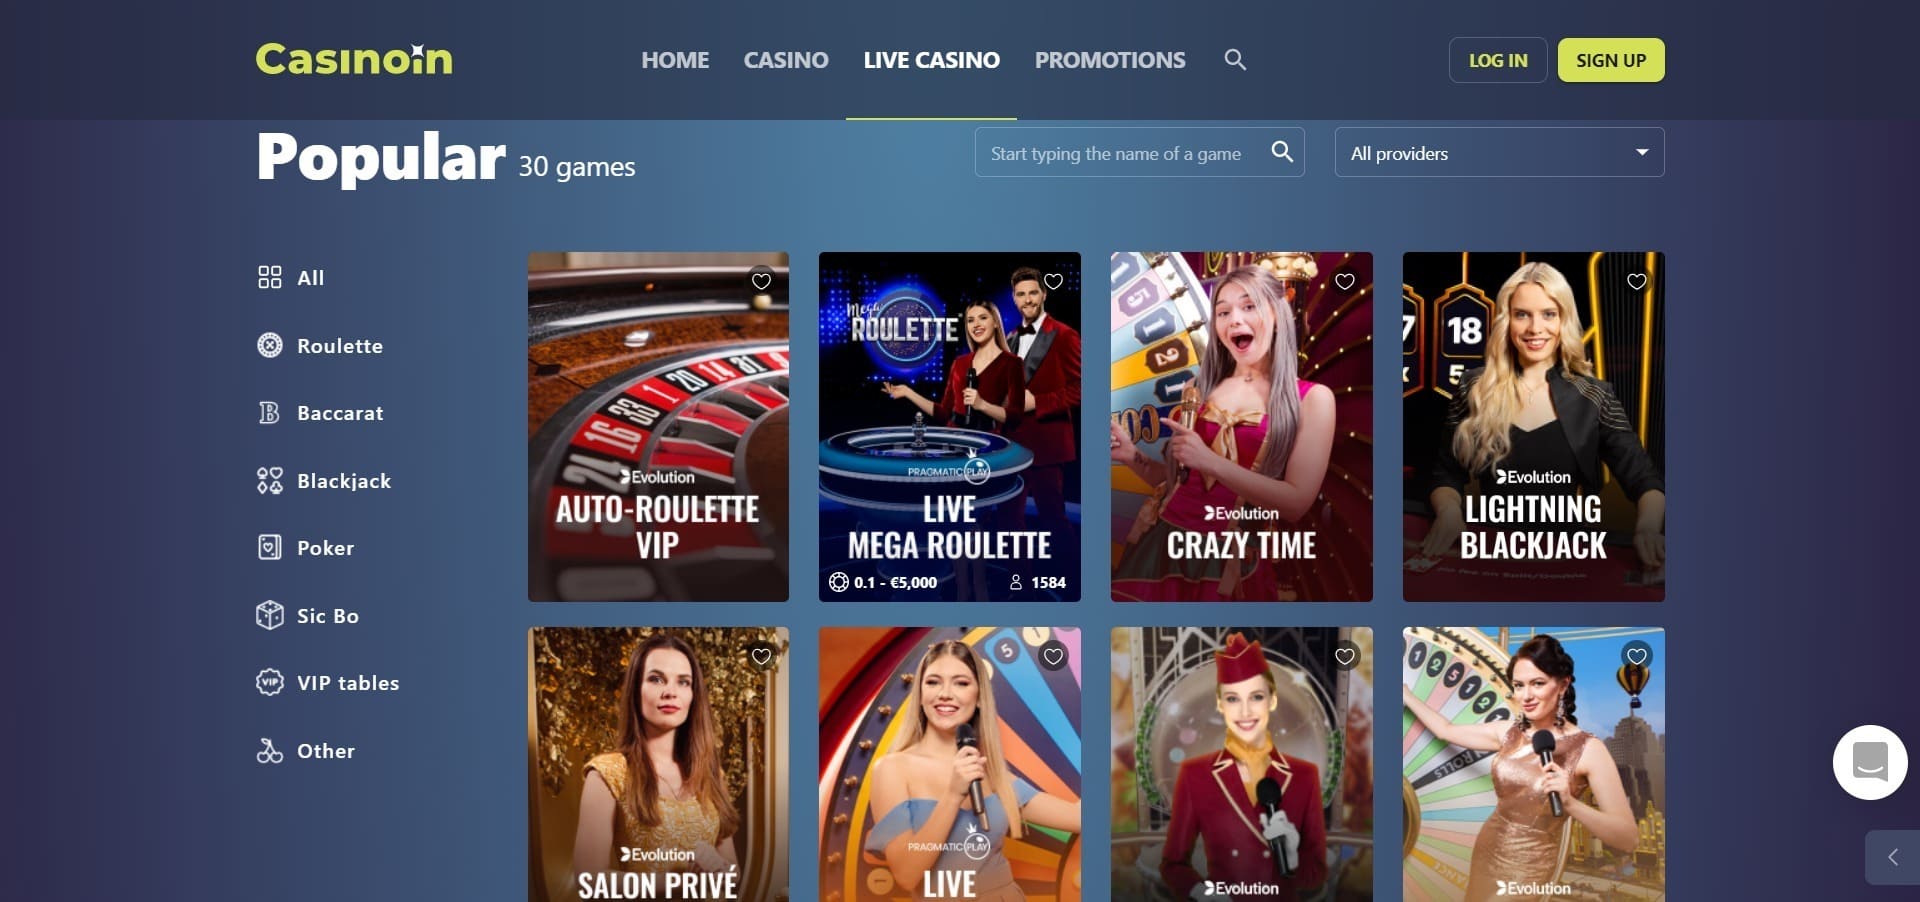 Casinoin živé kasino